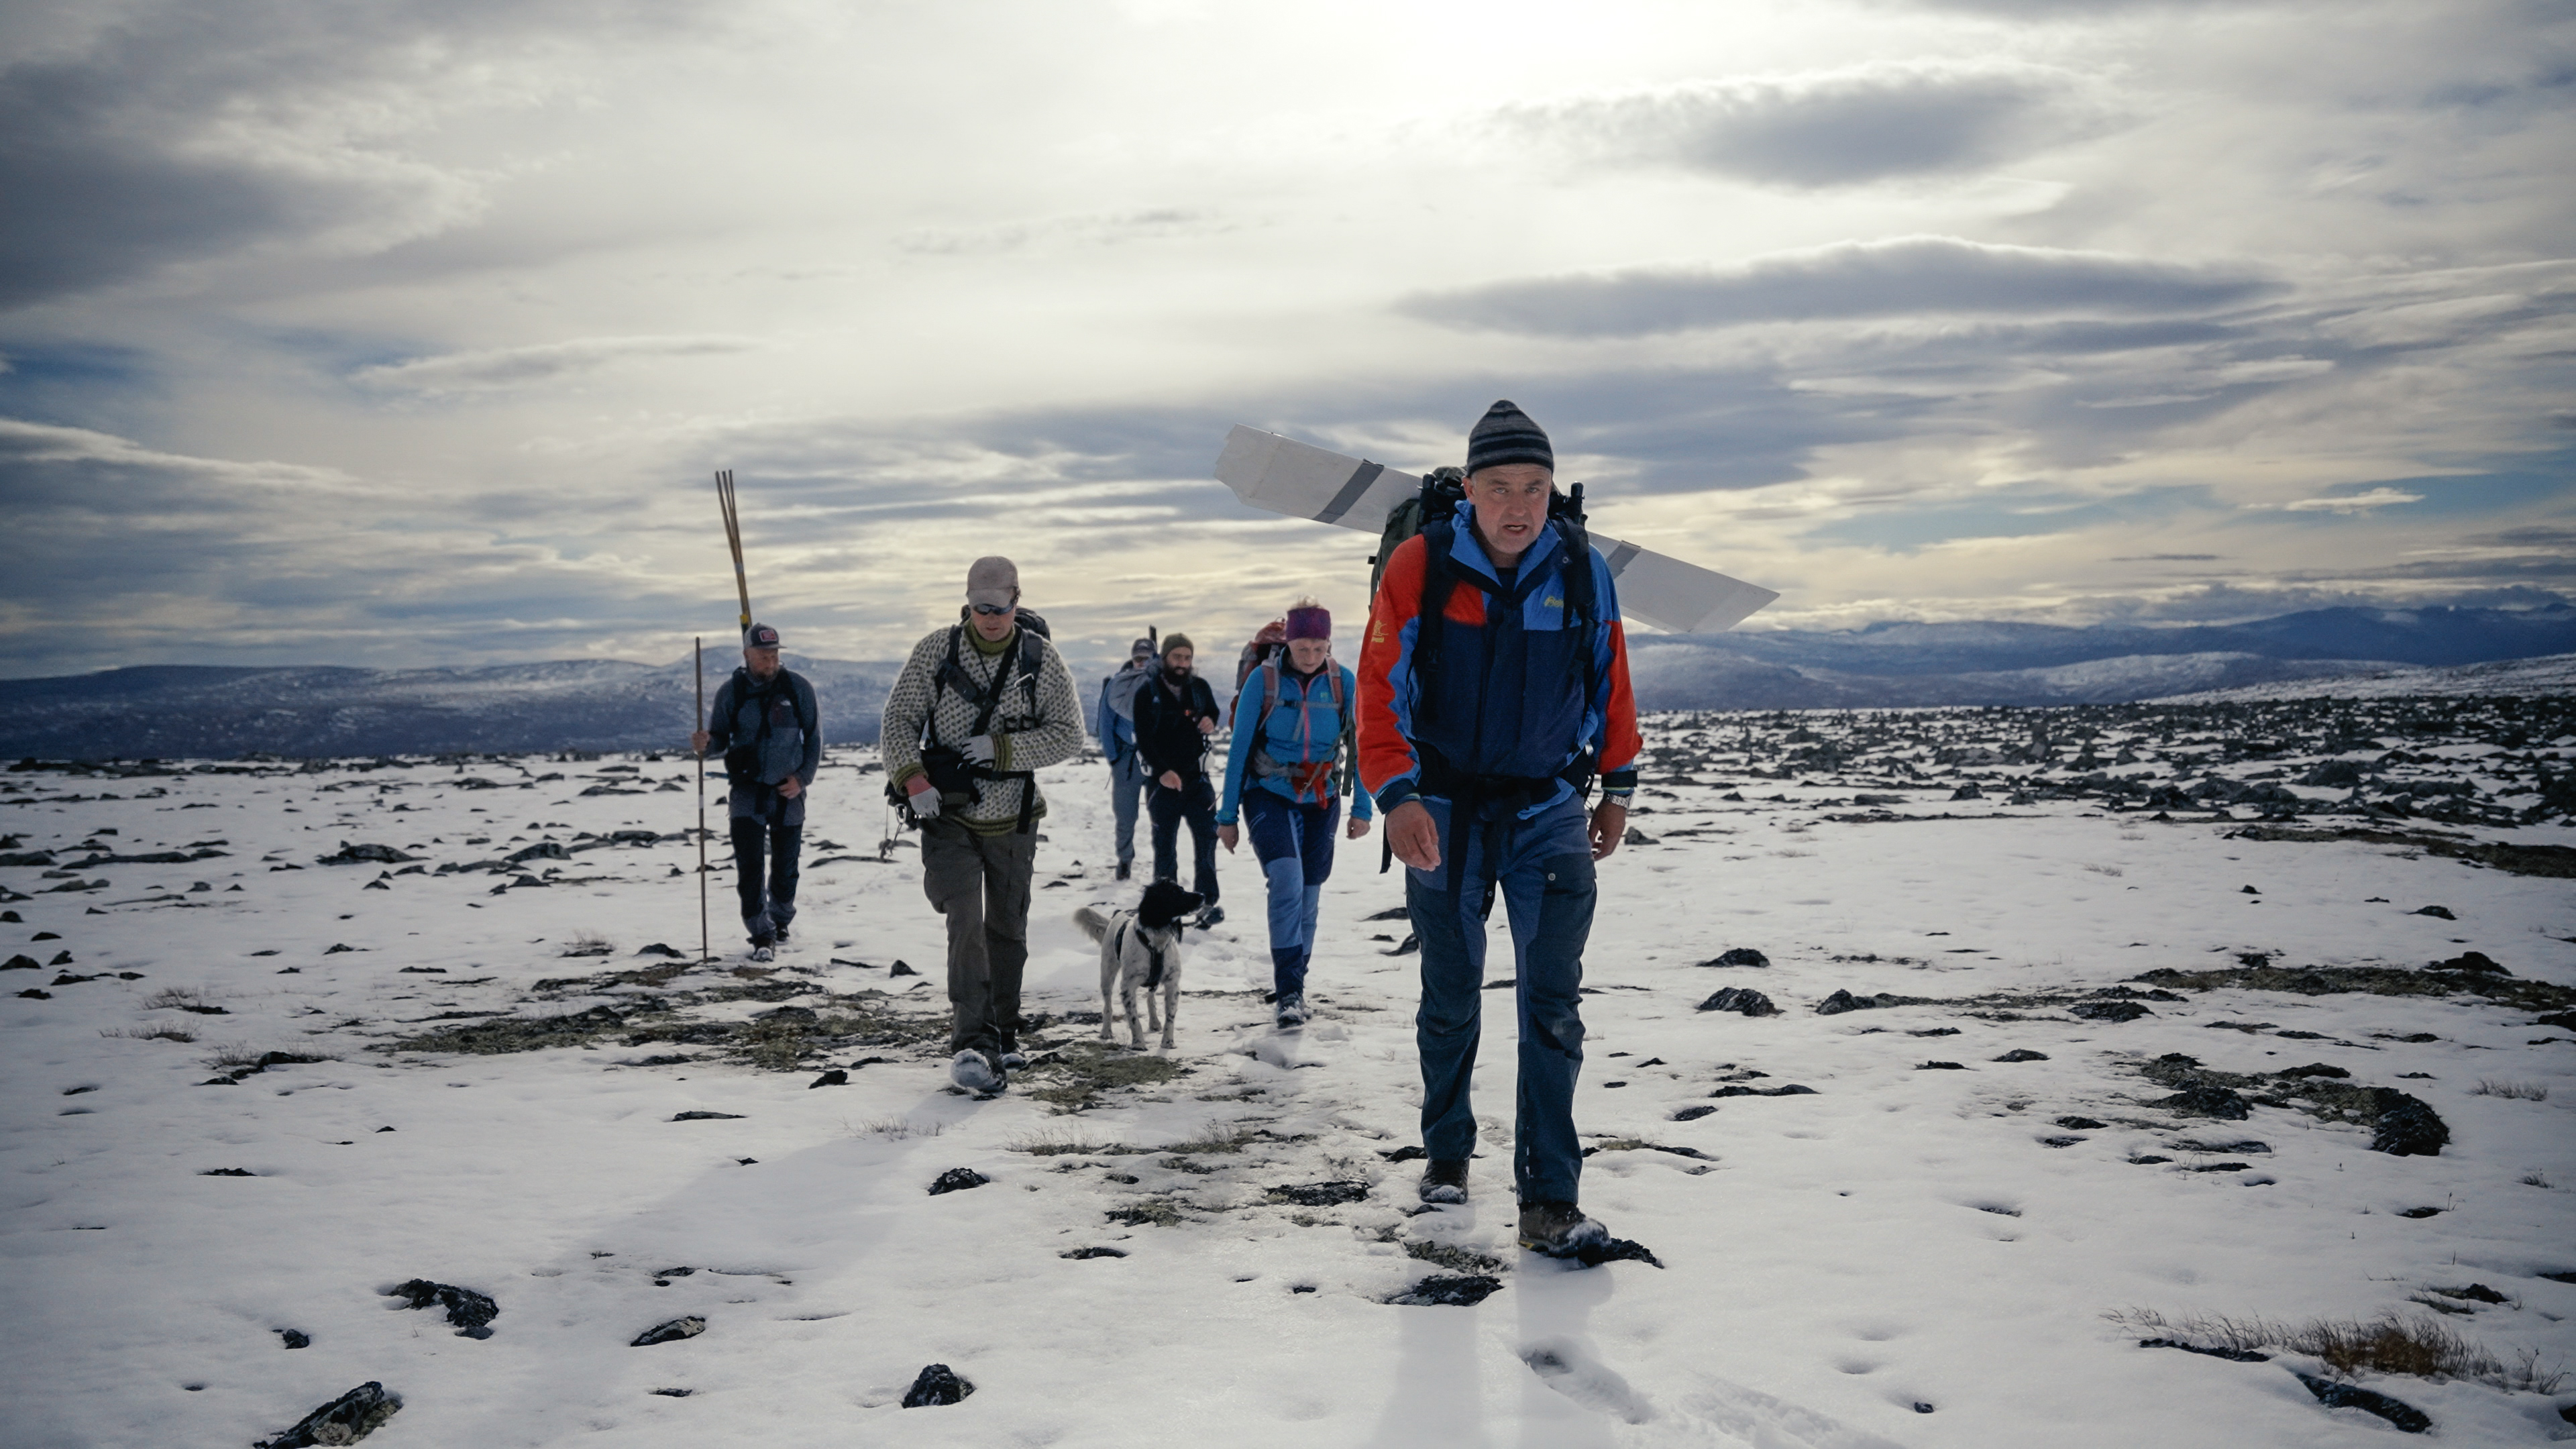 Los arqueólogos del glaciar descubren un esquí de madera de 1300 años con correas de cuero preservadas por el hielo en Noruega